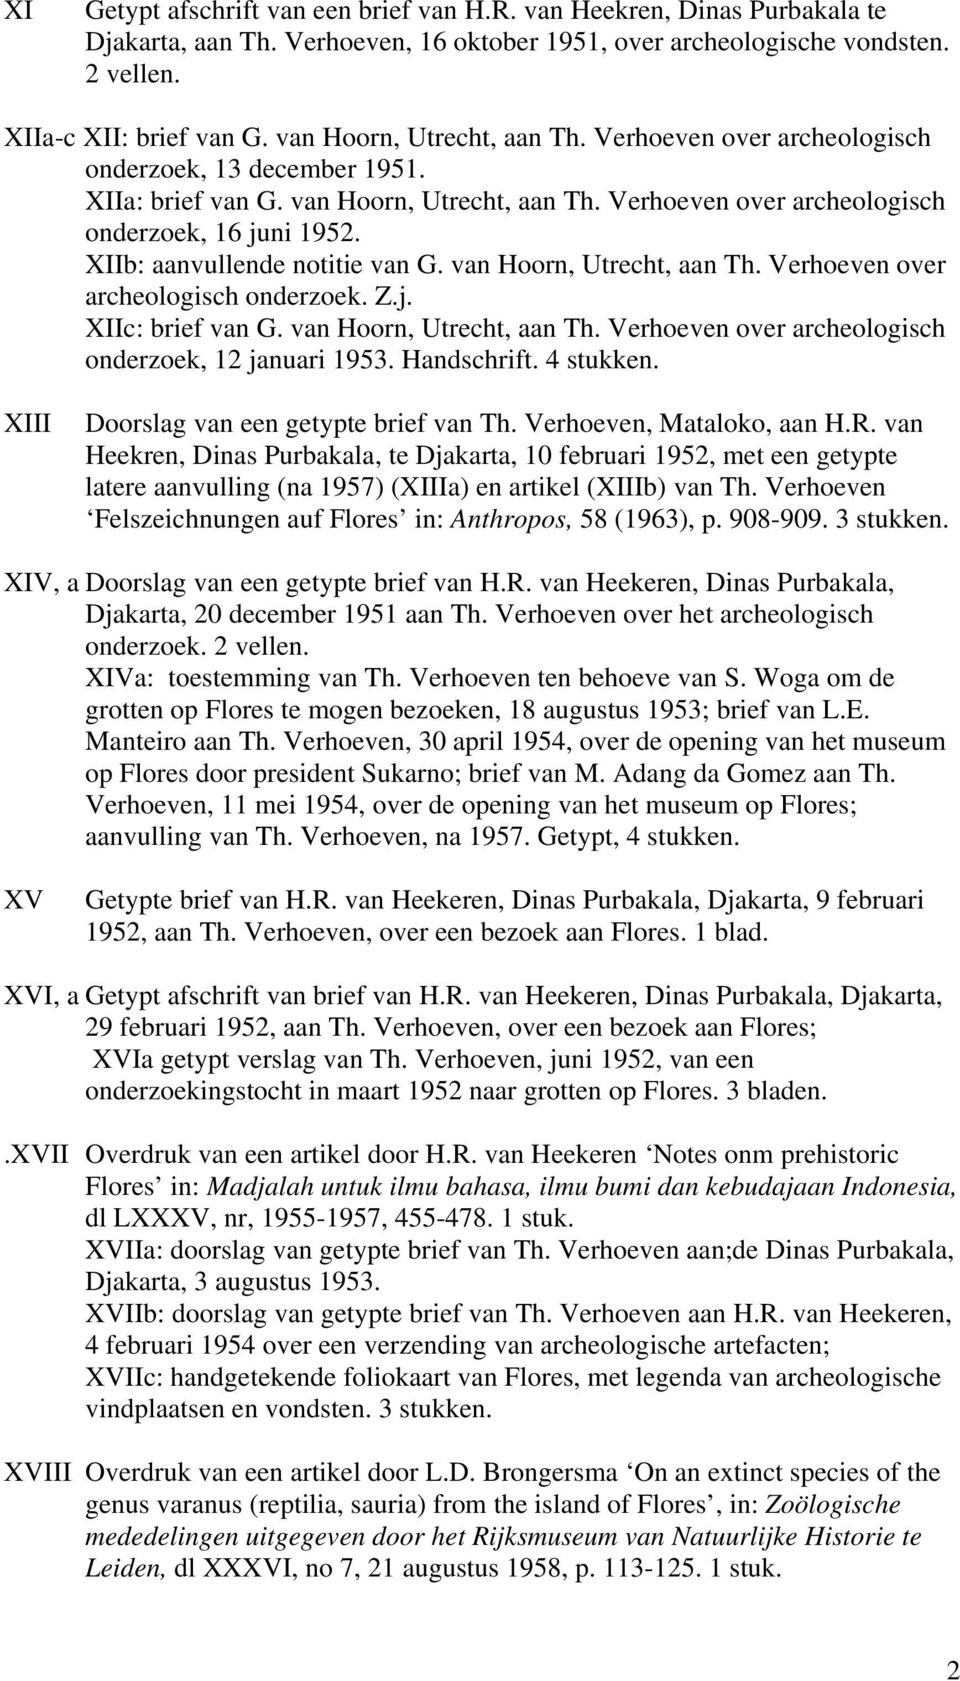 XIIb: aanvullende notitie van G. van Hoorn, Utrecht, aan Th. Verhoeven over archeologisch onderzoek. Z.j. XIIc: brief van G. van Hoorn, Utrecht, aan Th. Verhoeven over archeologisch onderzoek, 12 januari 1953.